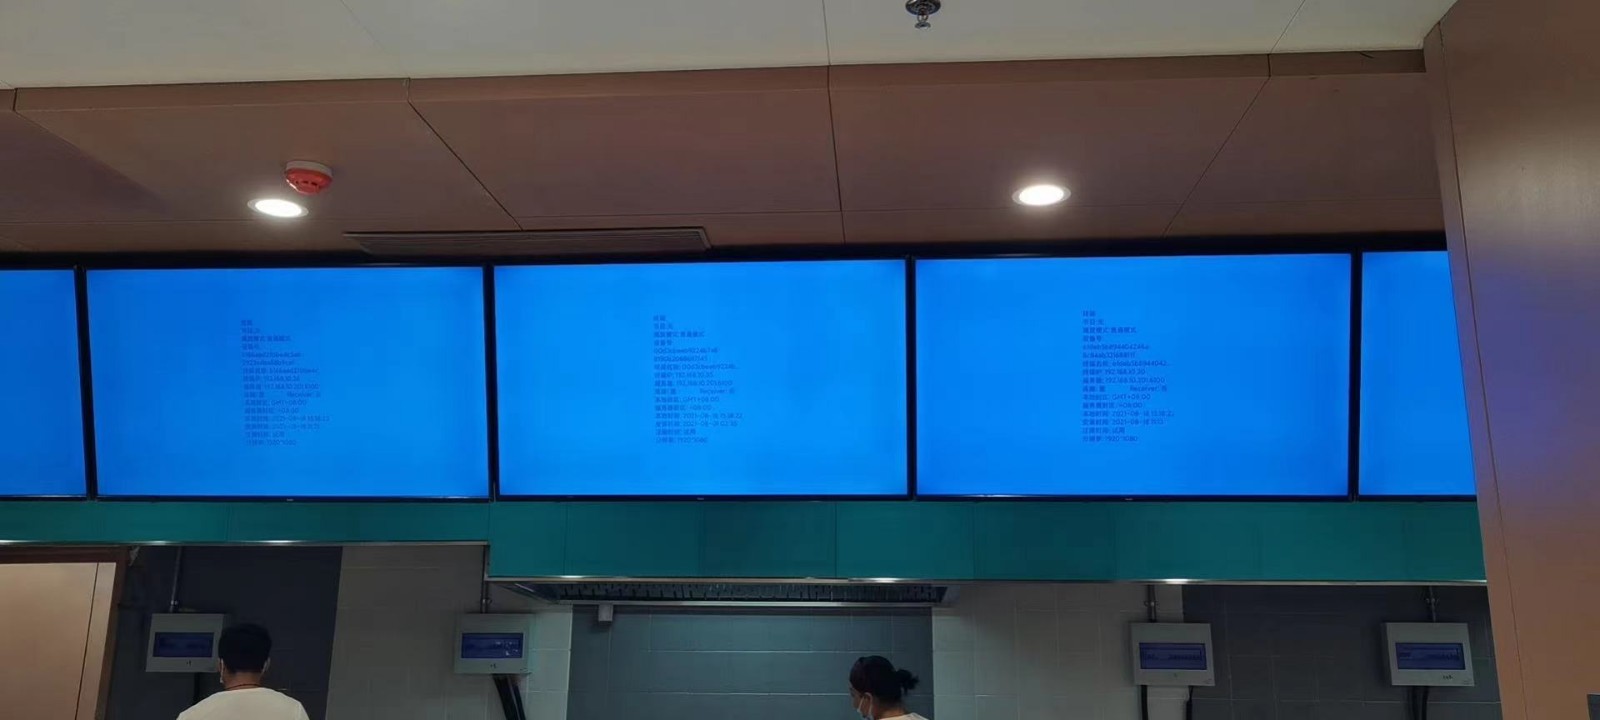 电子餐牌 液晶壁挂广告机 支持远程管理 一键发布节目 厂家直销 现货供应